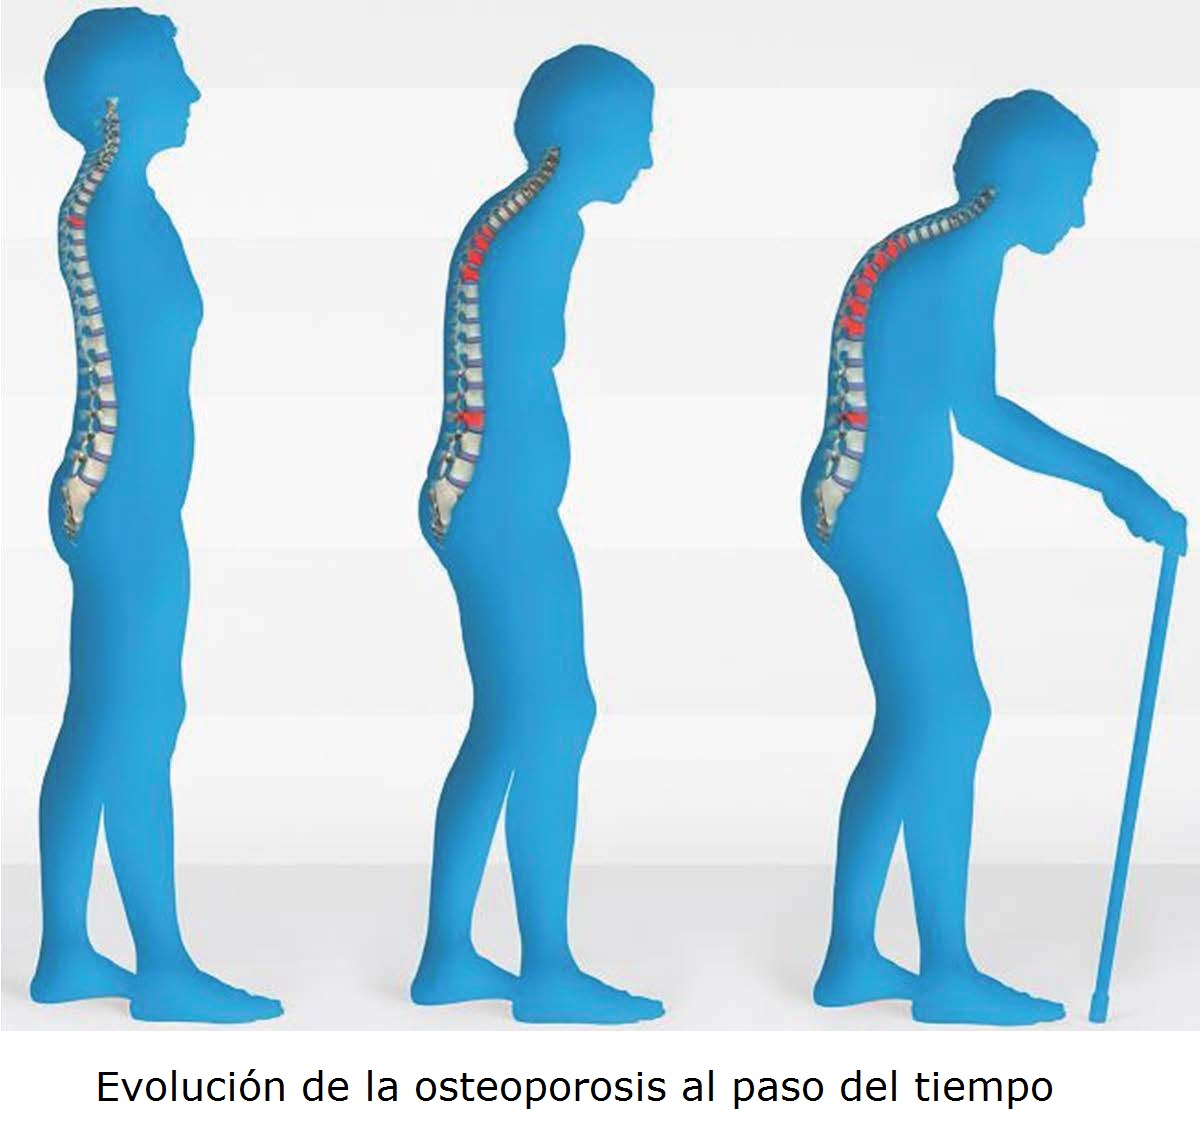 Evolución de la osteoporosis a lo largo de los años